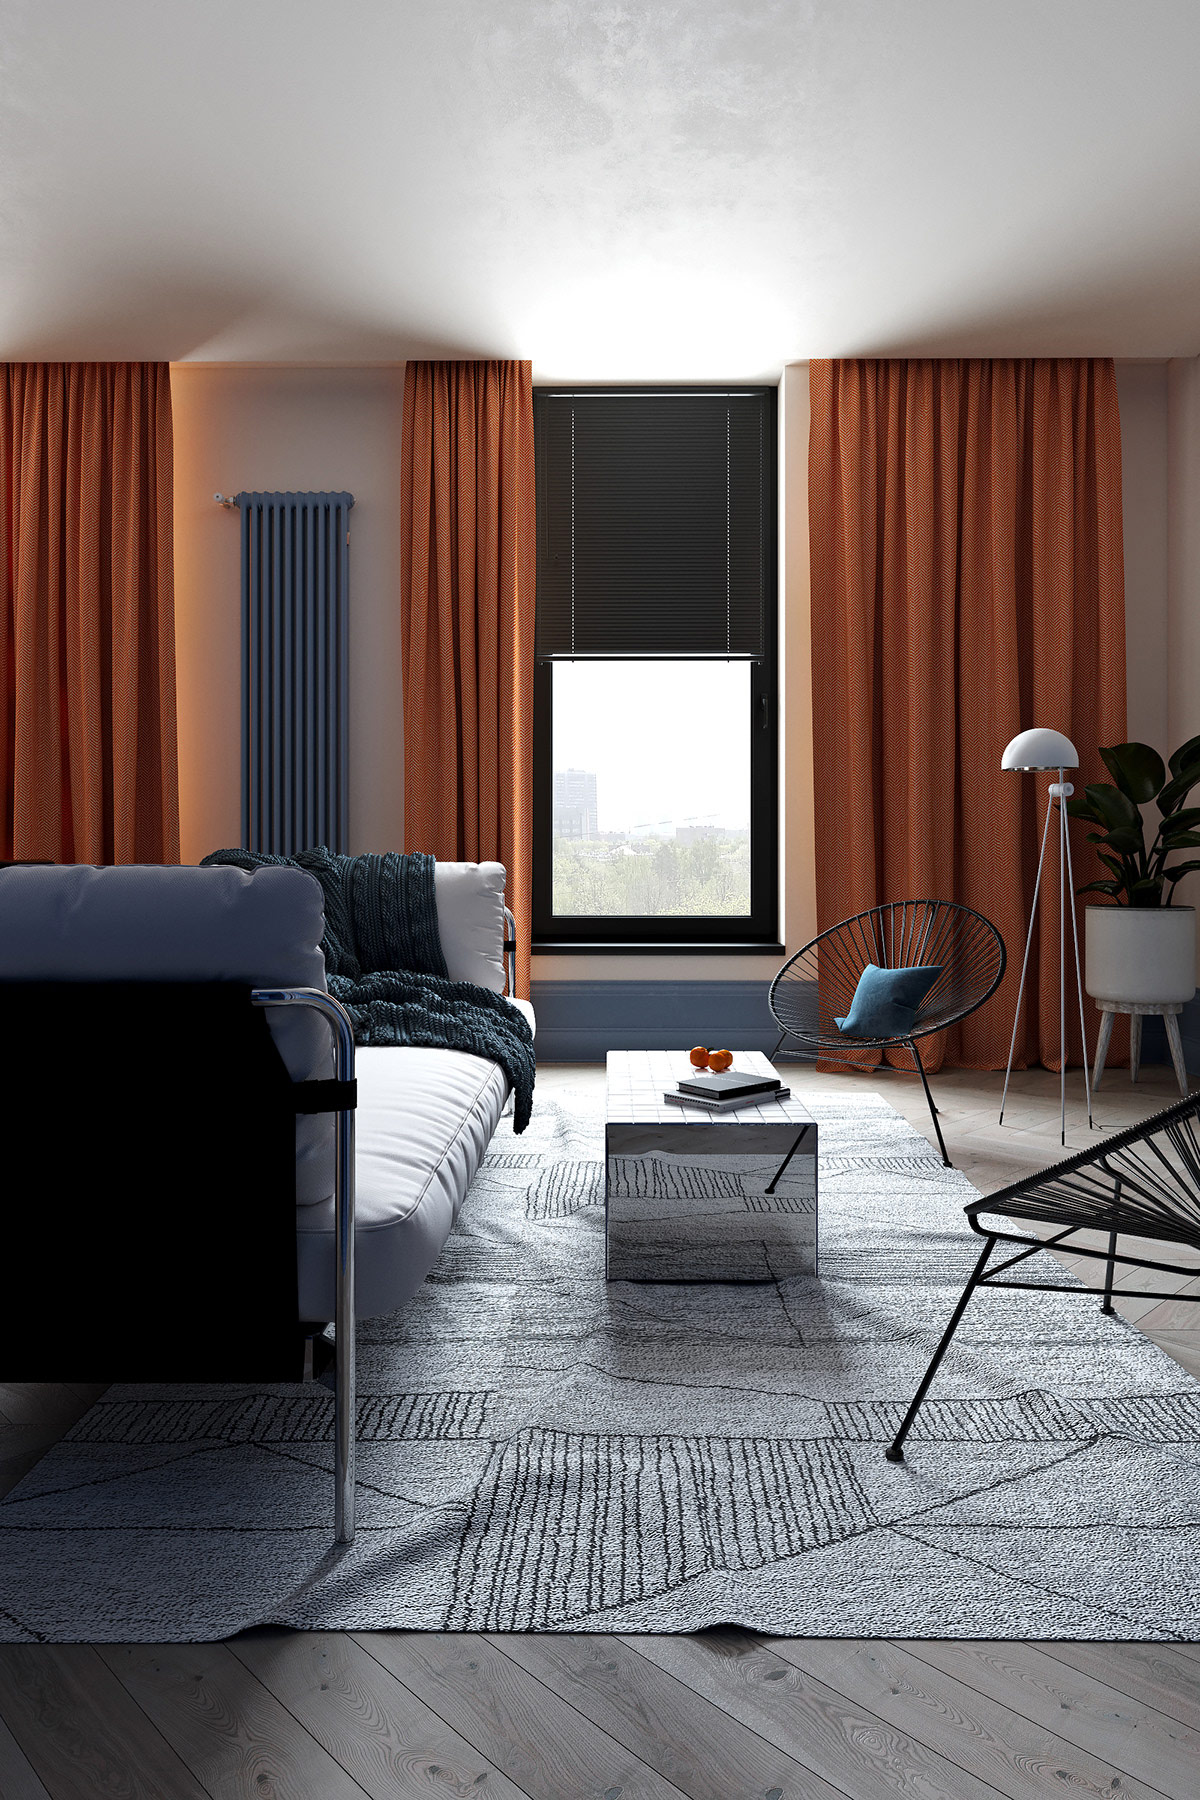 Phòng khách chọn gam màu xám chủ đạo, kết hợp một phần mảng tường màu xanh lam và rèm cửa màu cam tạo điểm nhấn nổi bật. Chiếc bàn nước ốp gương hiện đại phản chiếu hình ảnh tấm thảm xám nhạt đẹp mắt.